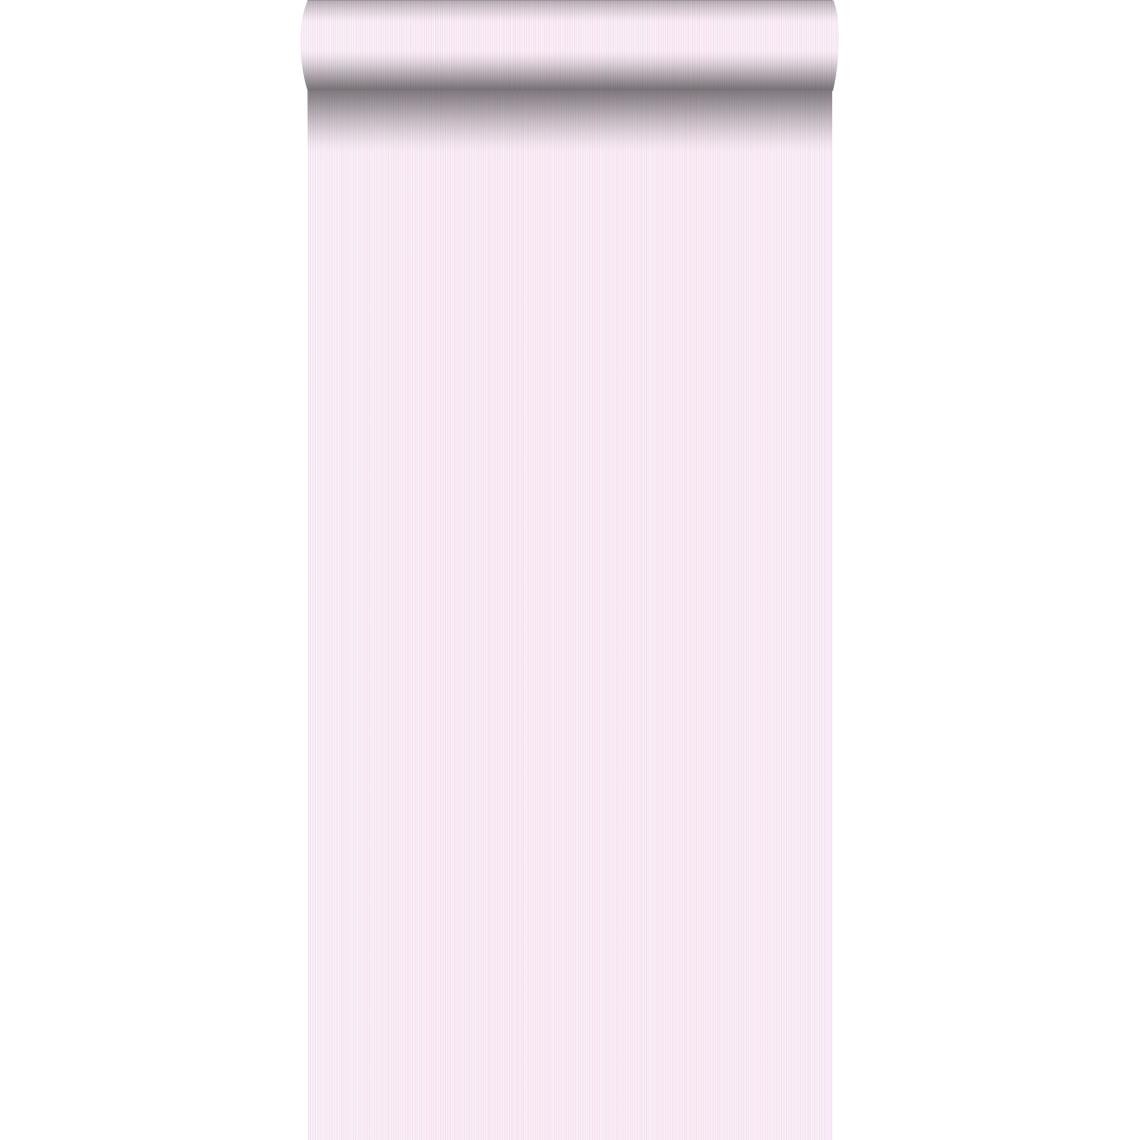 ESTAhome - ESTAhome papier peint rayures fines rose clair - 115708 - 53 cm x 10,05 m - Papier peint